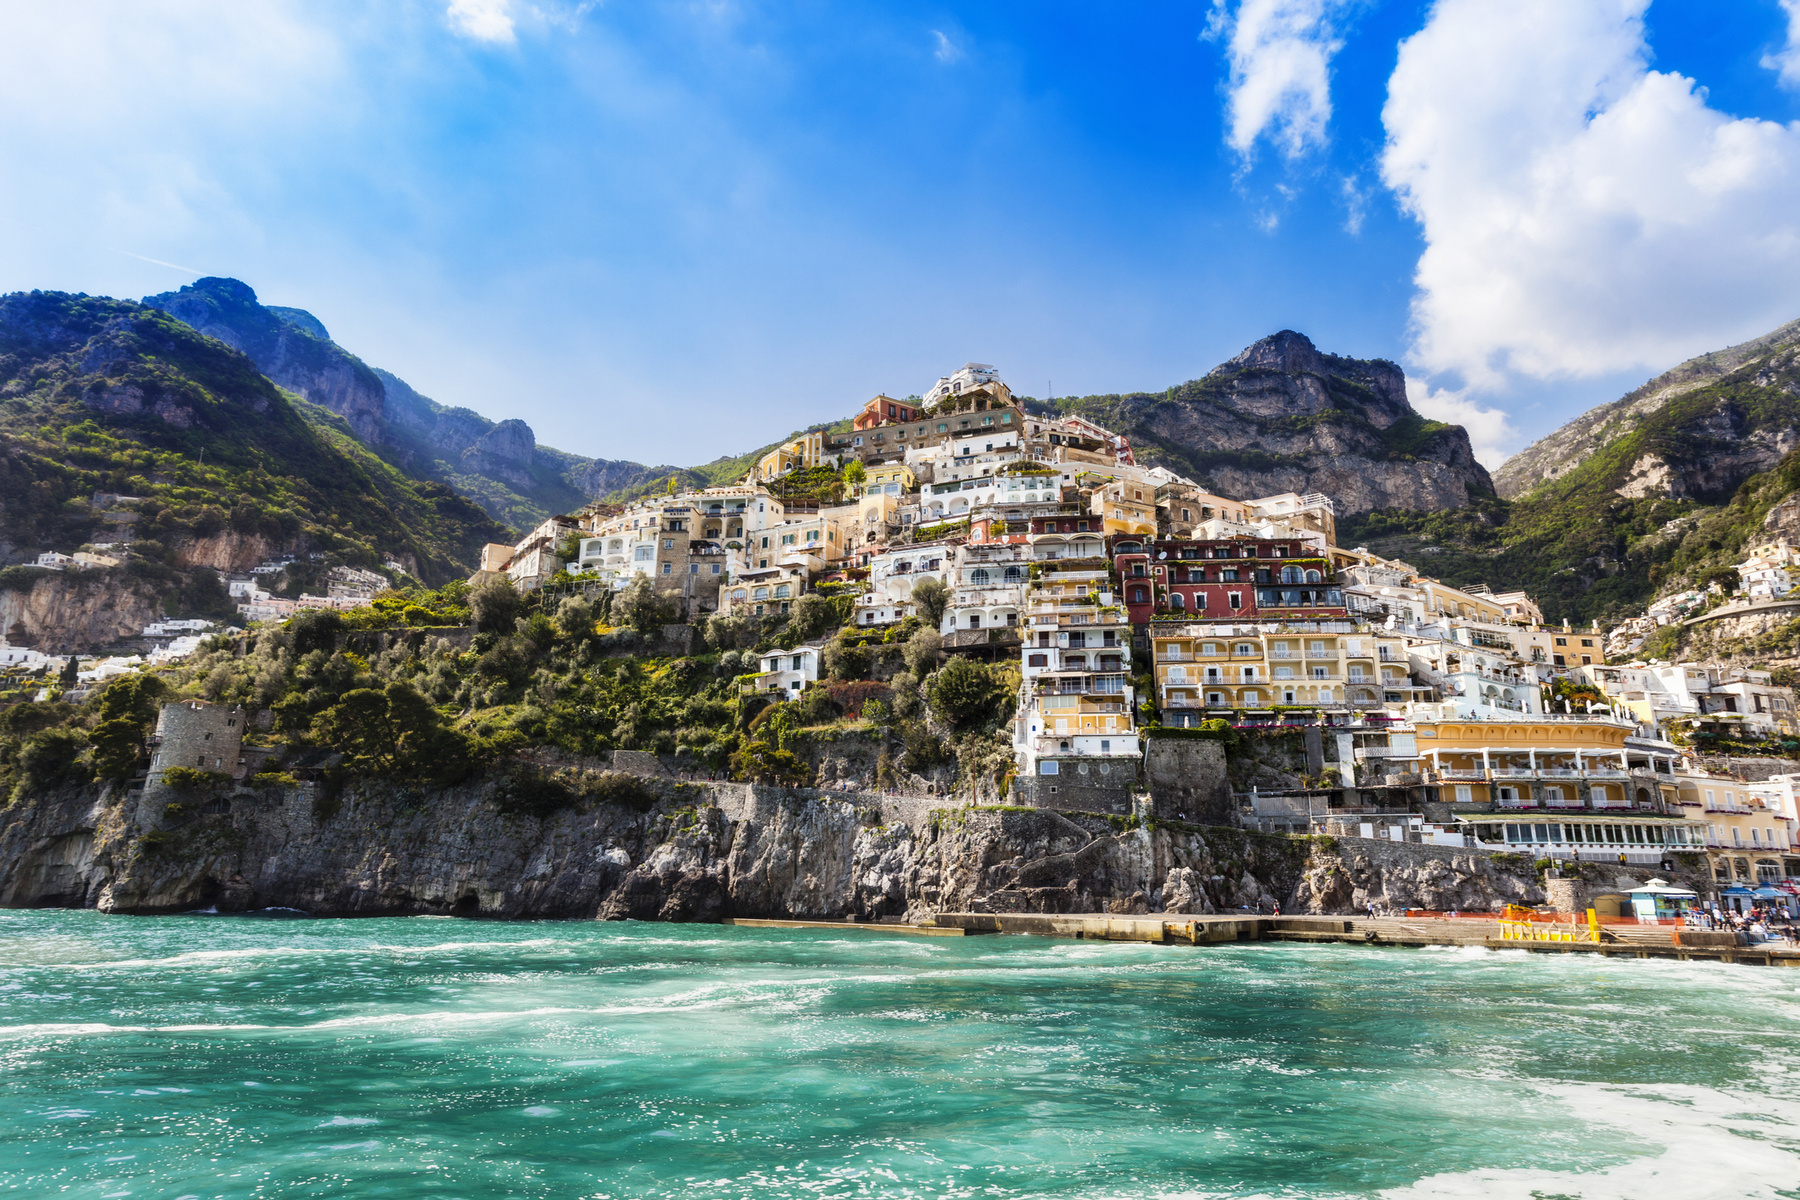 Positano, Olaszország Positano olyan, akár egy mediterrán képeslap: sziklás hegyeire a tengerpart felől színes házak futnak fel. 1997-ben az Amalfi-part több településével együtt került fel az UNESCO Világörökségi Listájára. Legnépszerűbb látványossága a Santa Maria Assunta-katedrális és a benne található ikon, a Fekete Madonna. 